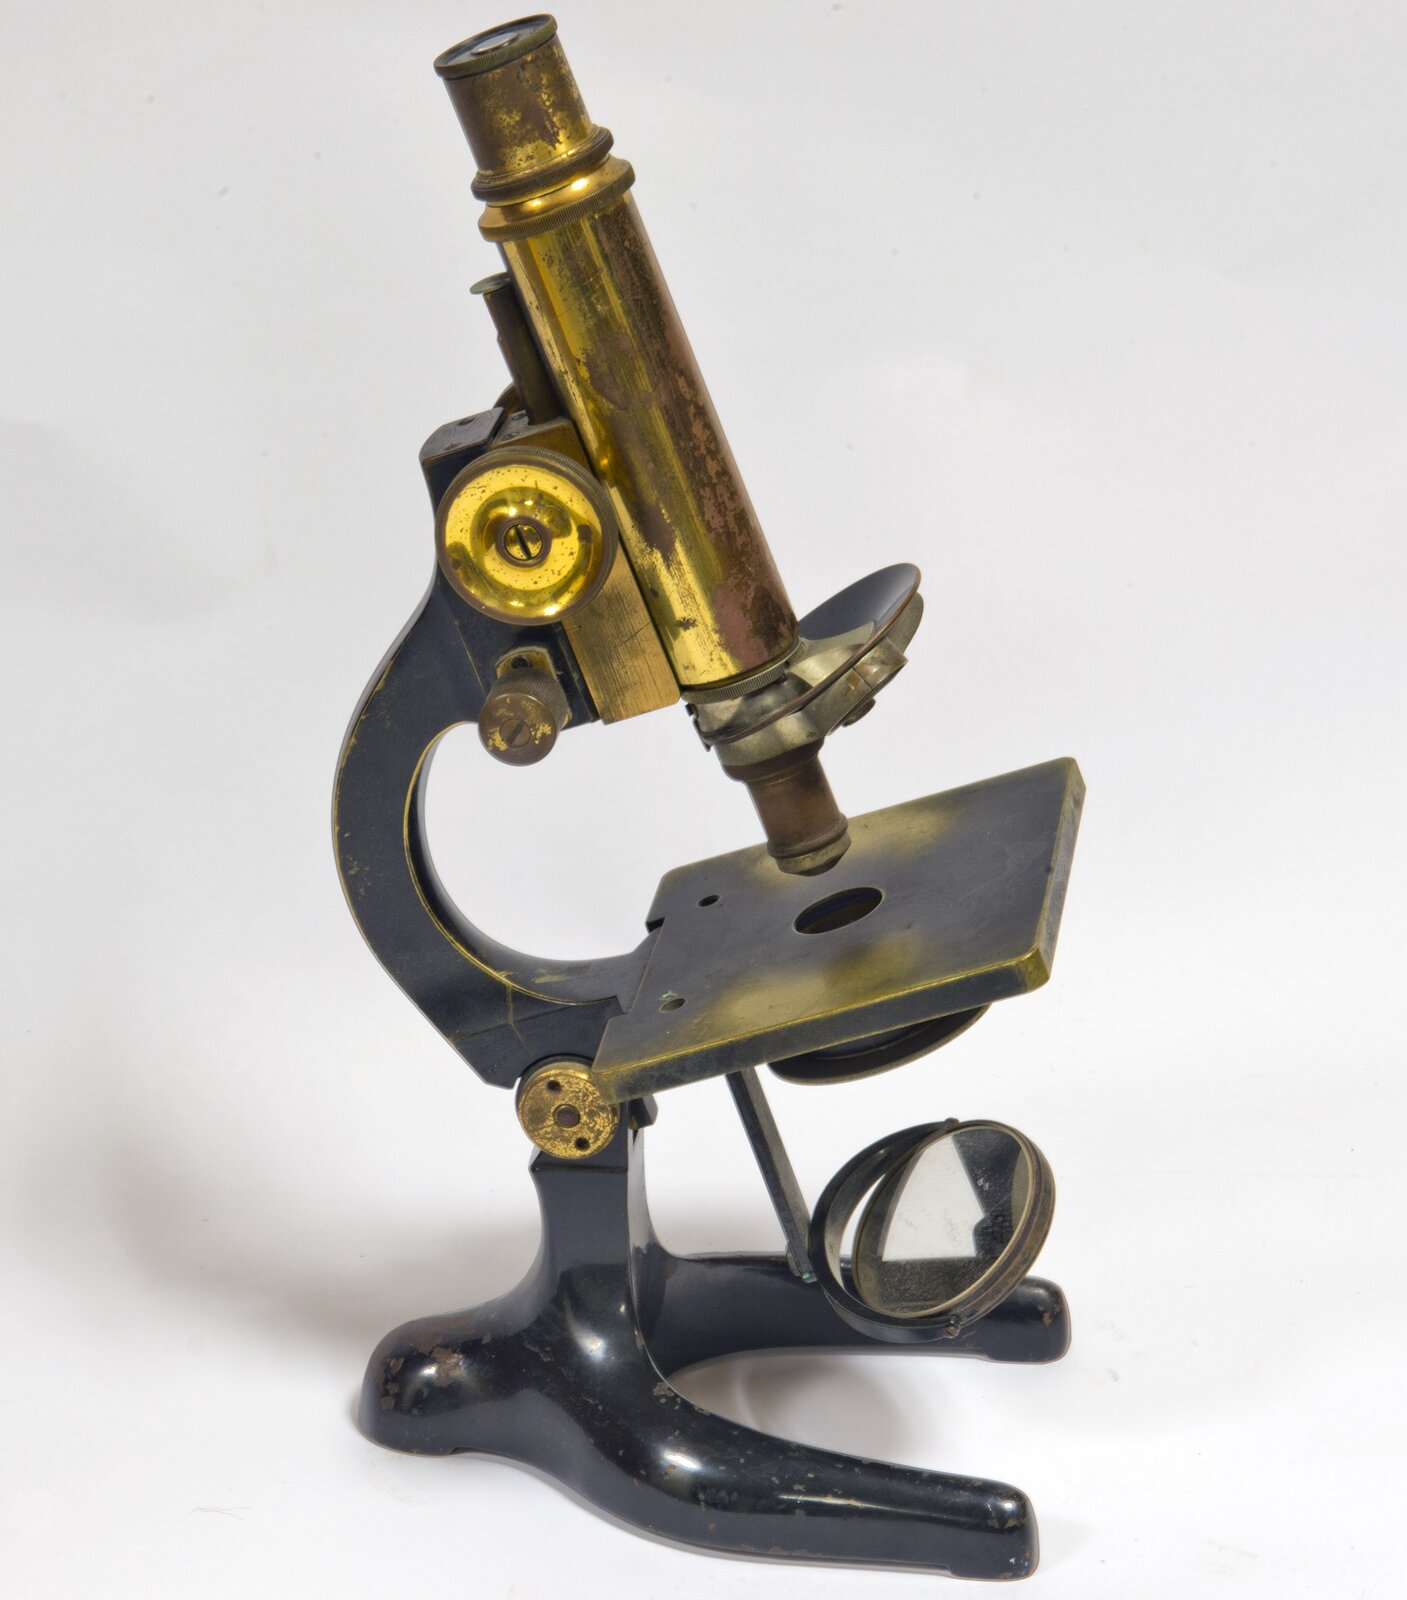 Fotografia przedstawia stary mikroskop. Mimo że jest to przyrząd używany ponad dwieście lat temu, jego budowa jest bardzo zbliżona do współczesnego mikroskopu.